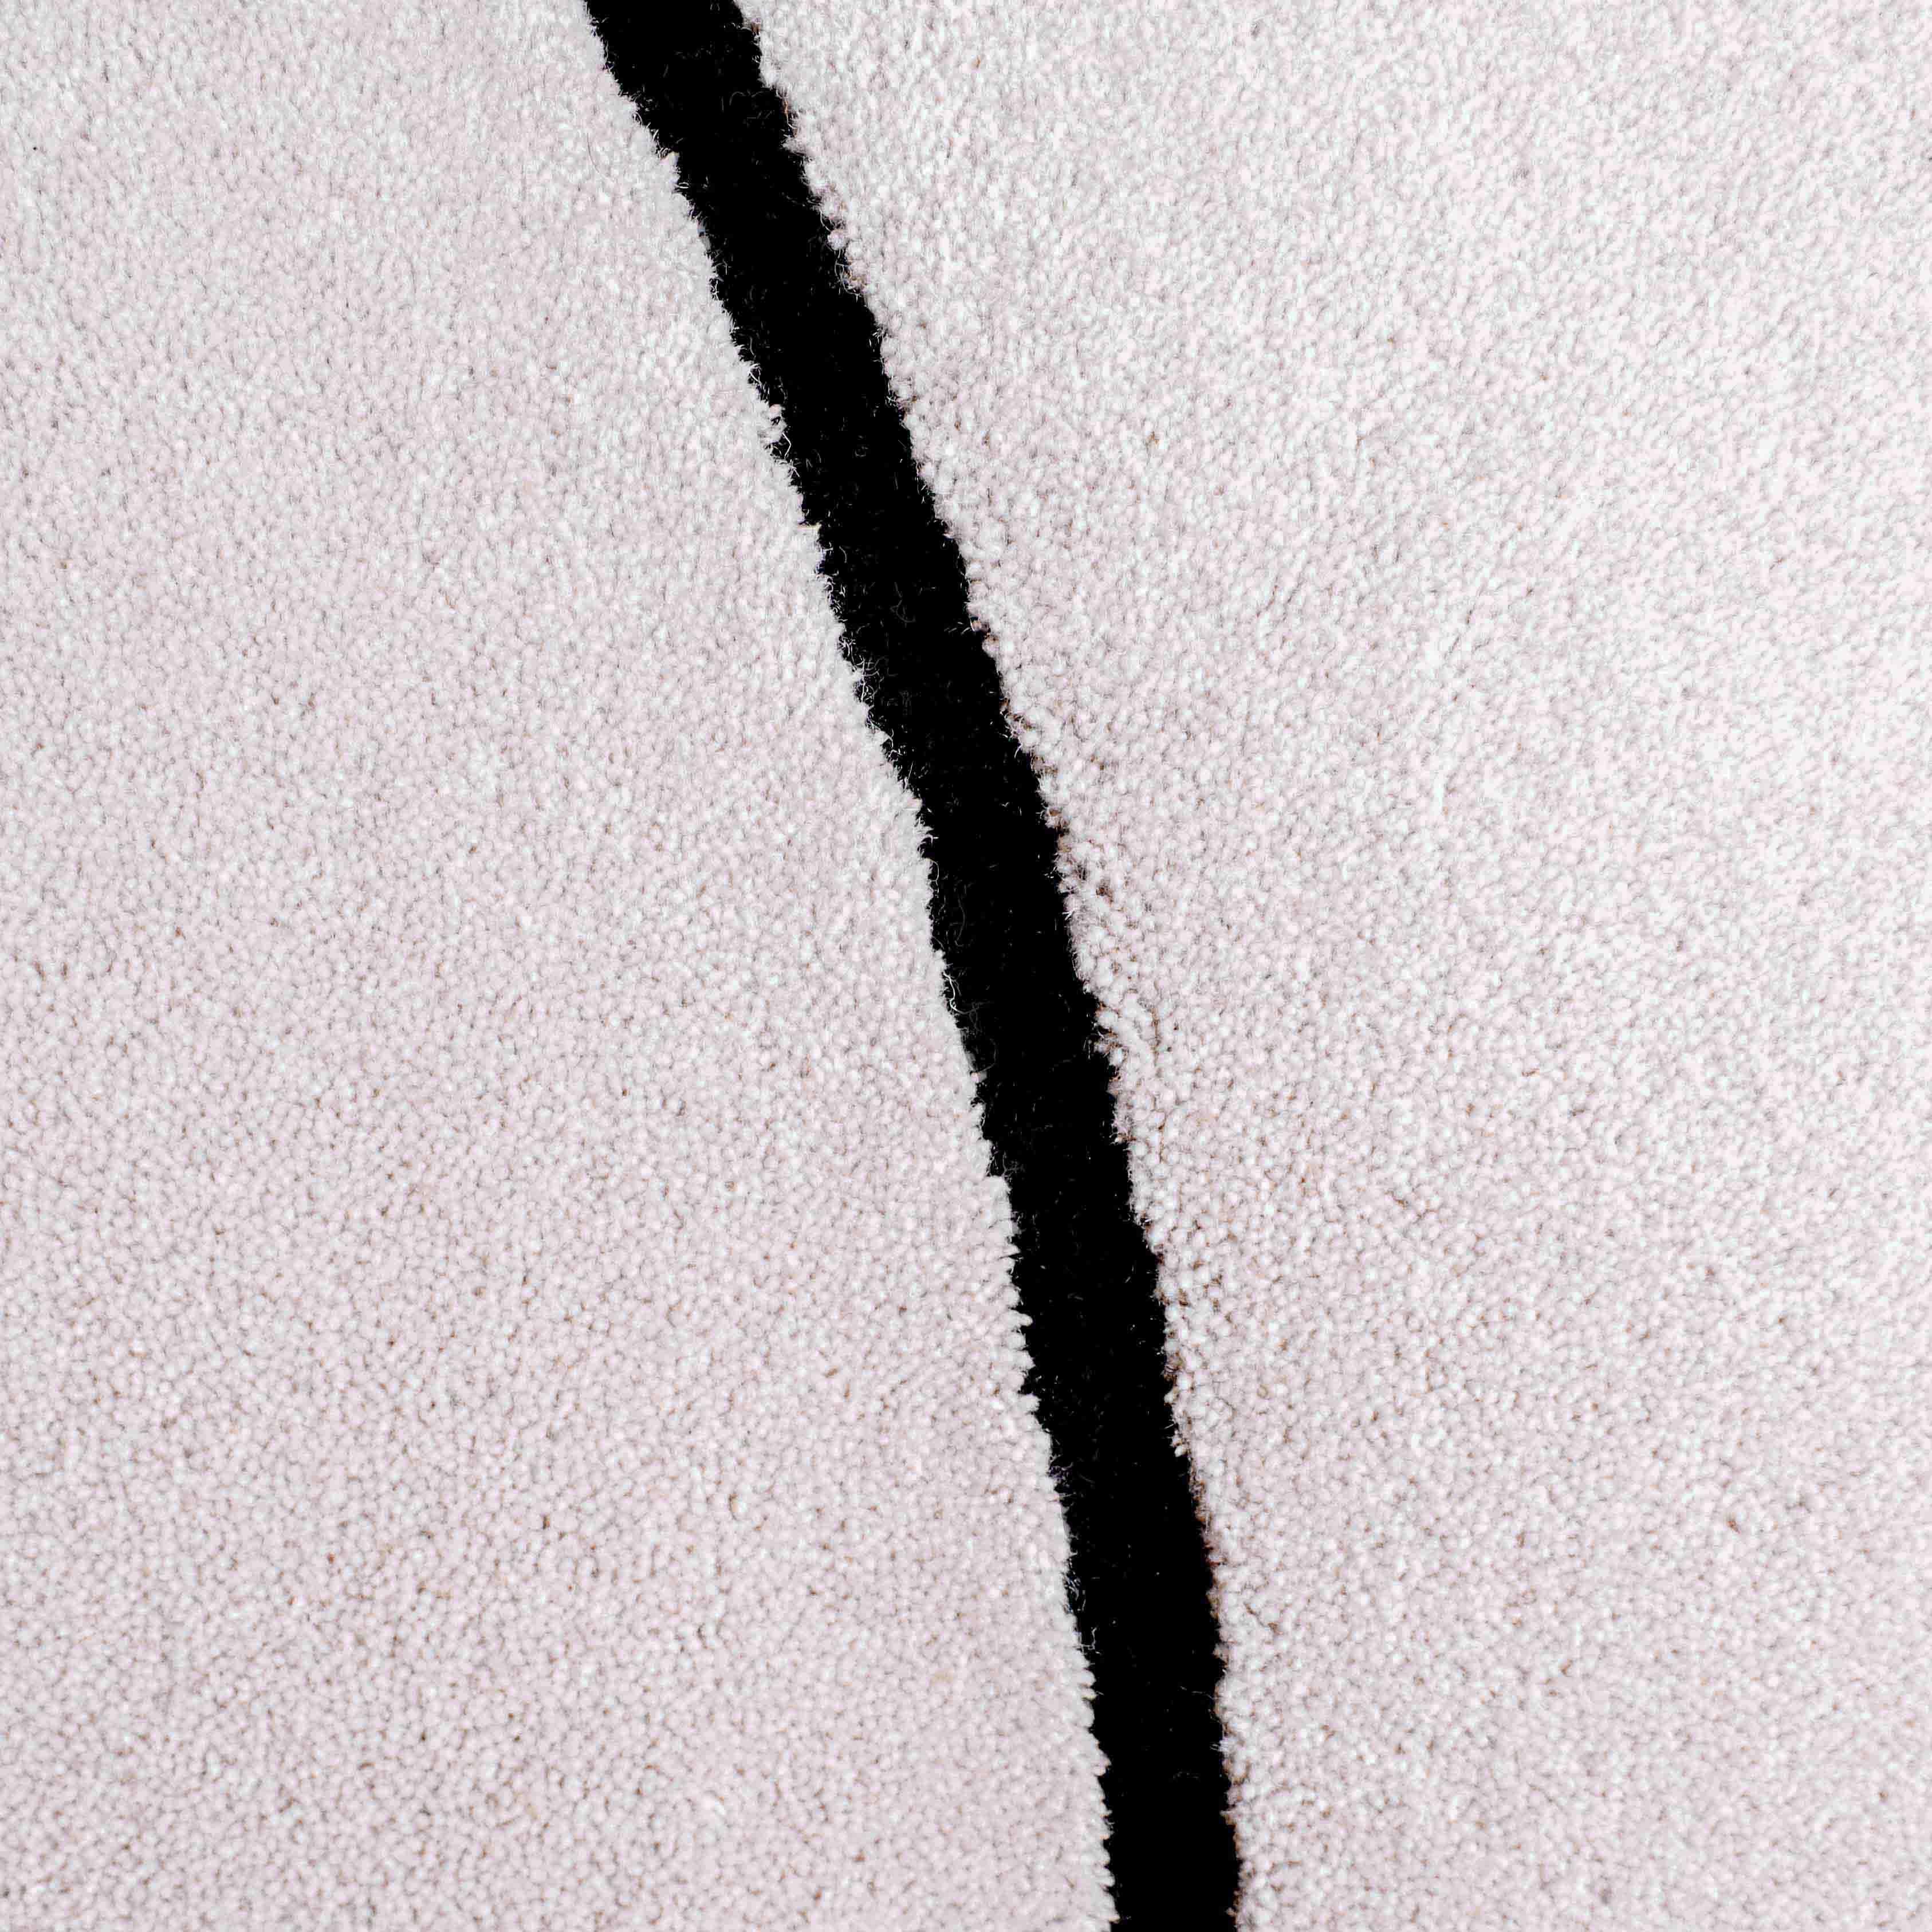 Le Squiggle gris nuage présente une surface en laine douce. 

Taille : 4.5 x 6.5 ft 
MATERIAL : Laine
Couleur : Gris clair* + Noir
Fabriqué en Suède

*Les couleurs peuvent varier en fonction de l'éclairage et de la photographie.